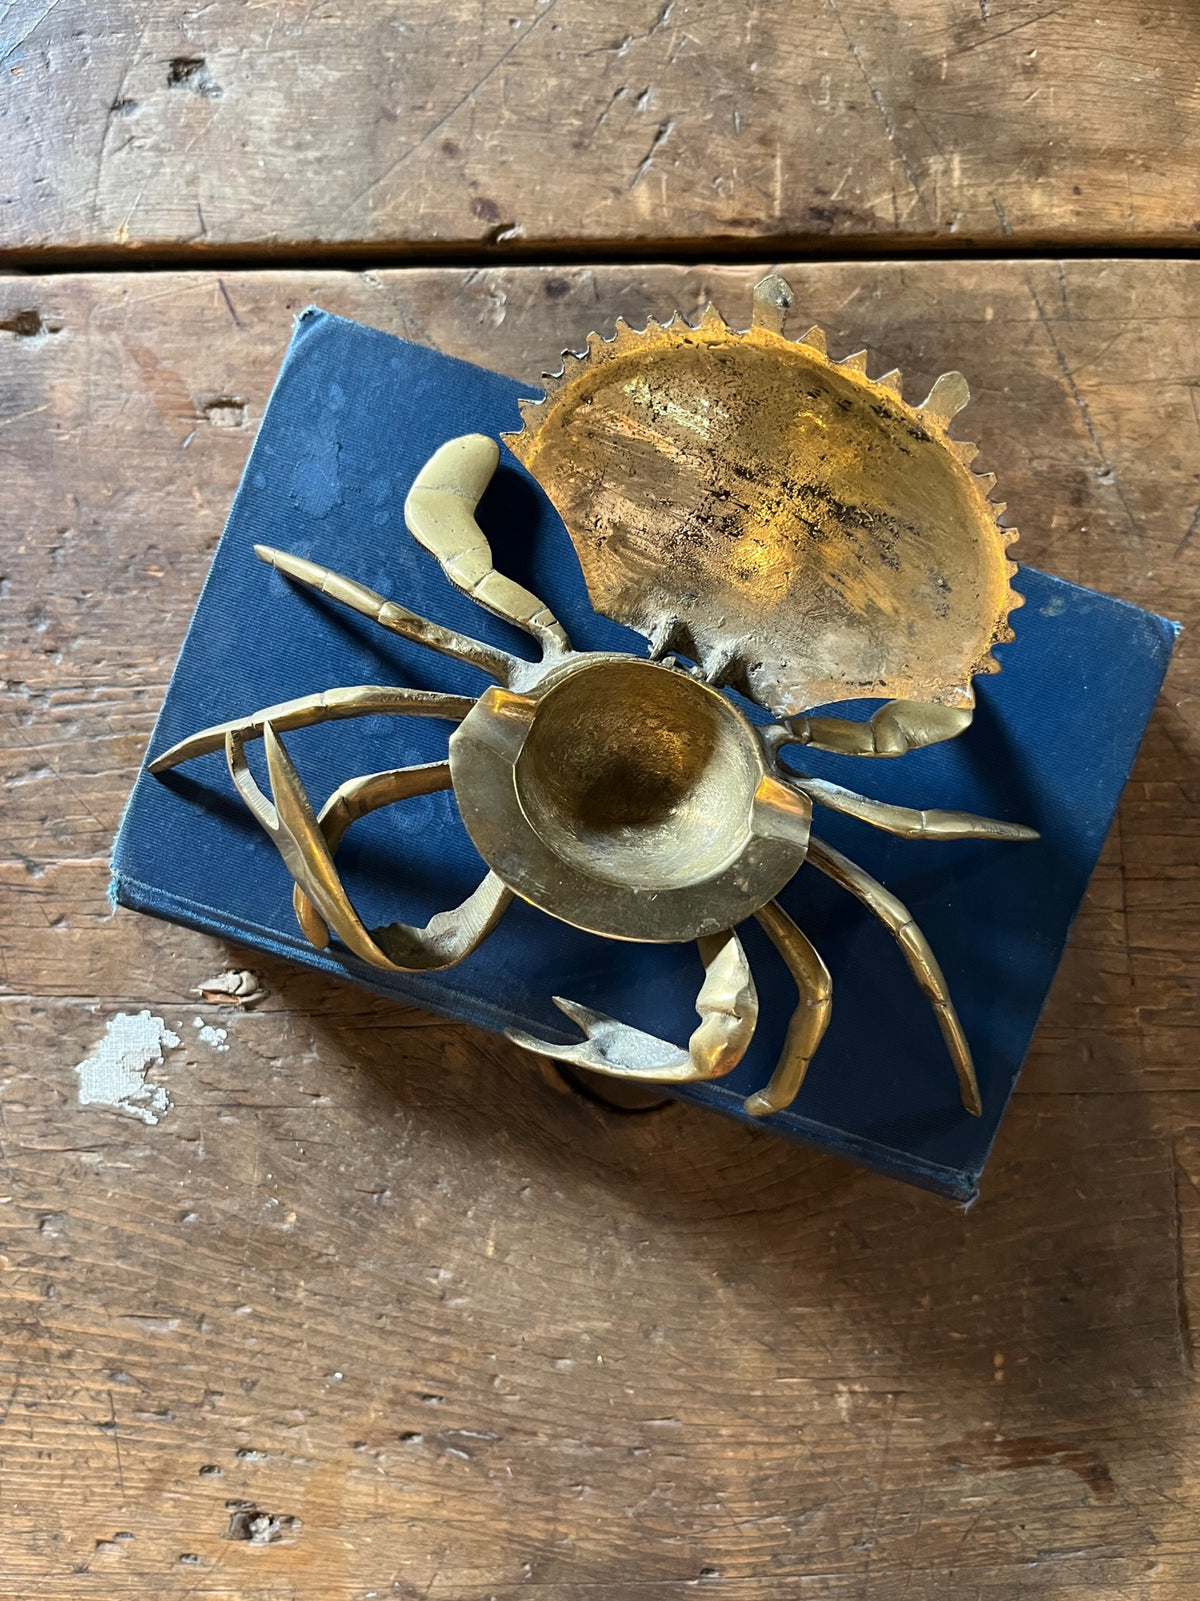 Vintage Brass Crab Ashtray